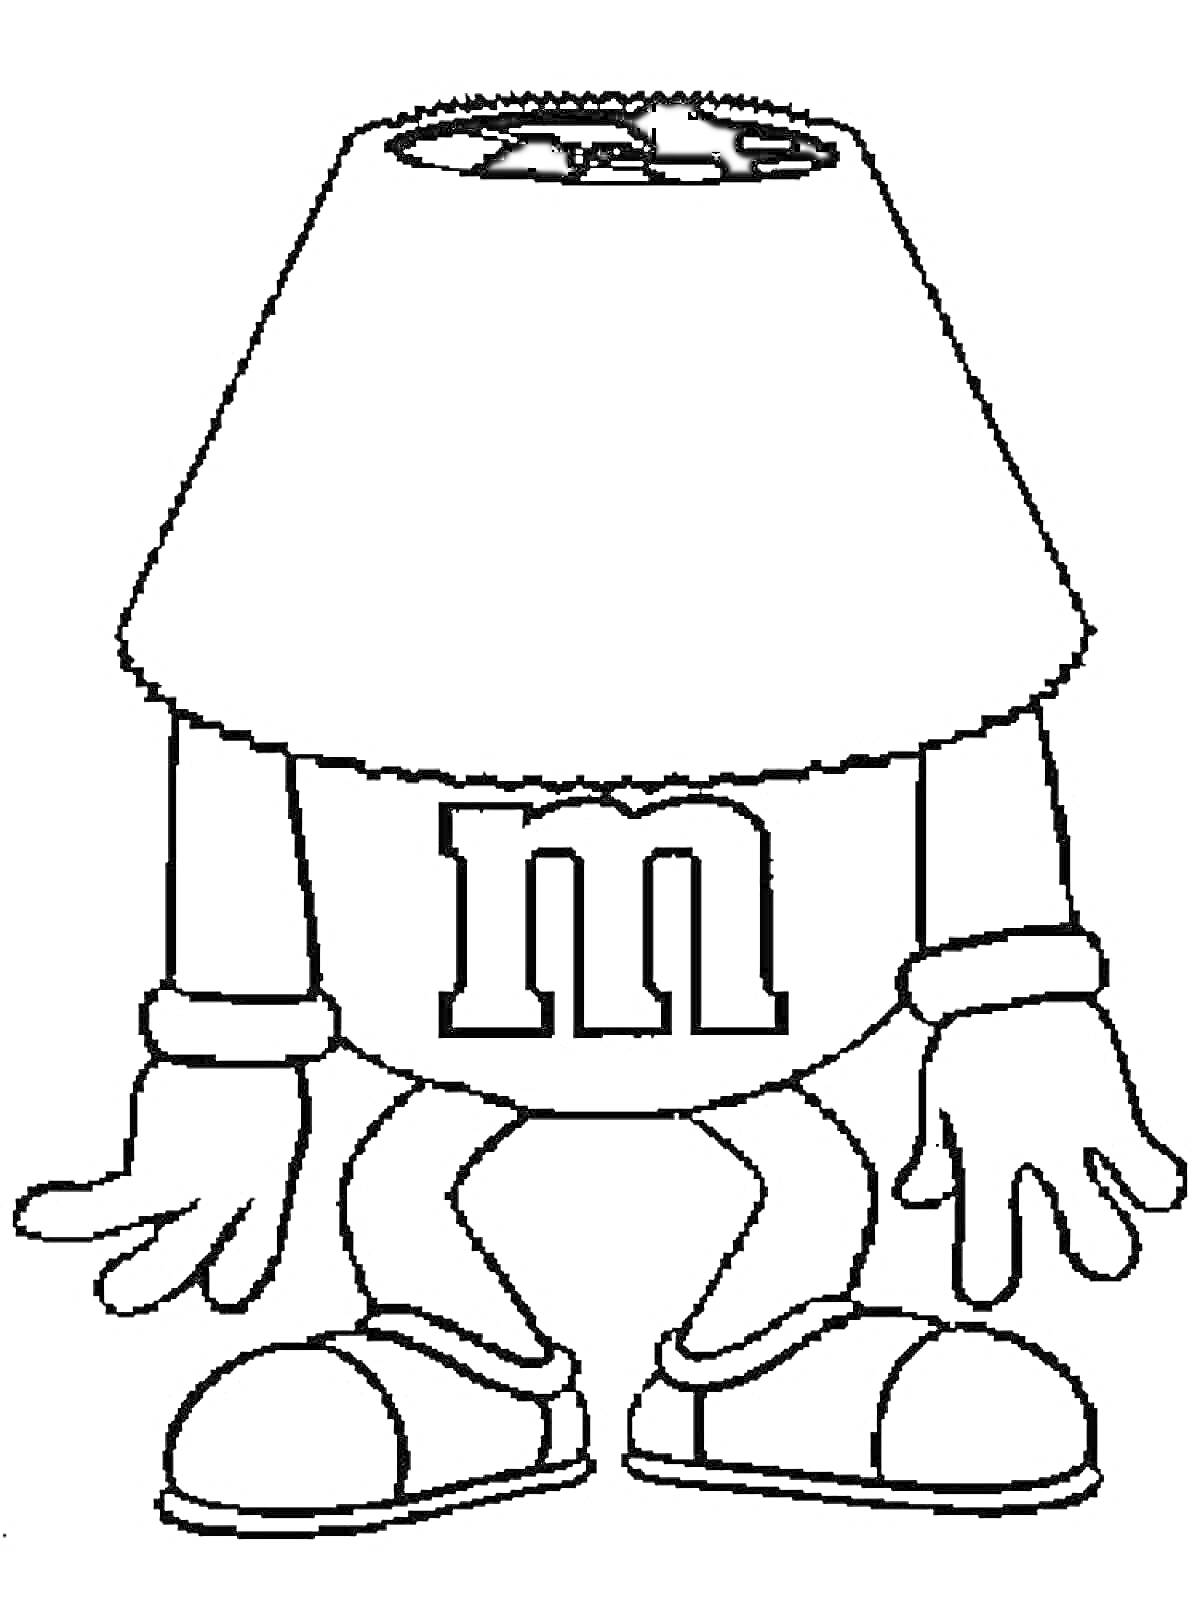 Раскраска Персонаж из M&M's с абажуром вместо головы, с логотипом 